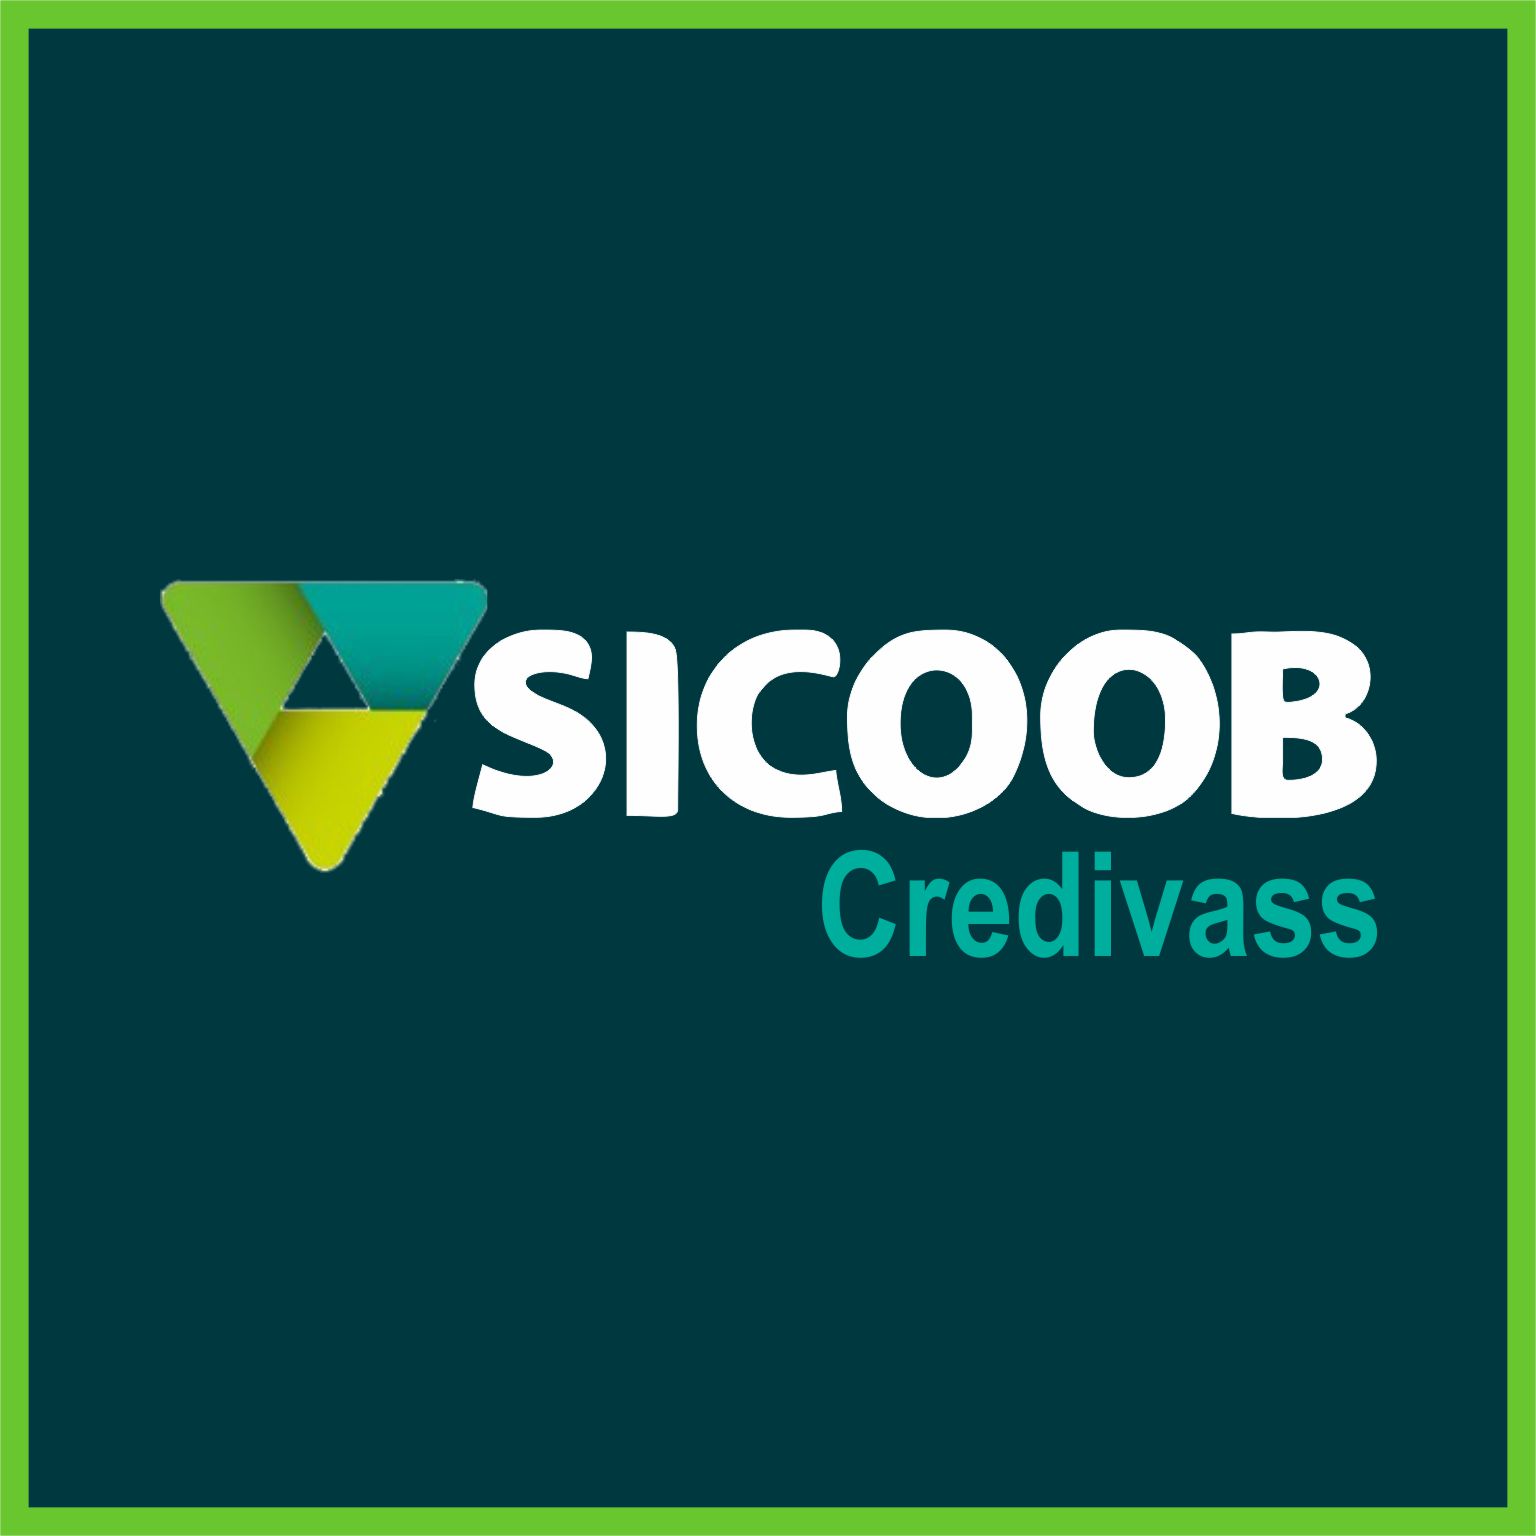 Sicoob Credivas